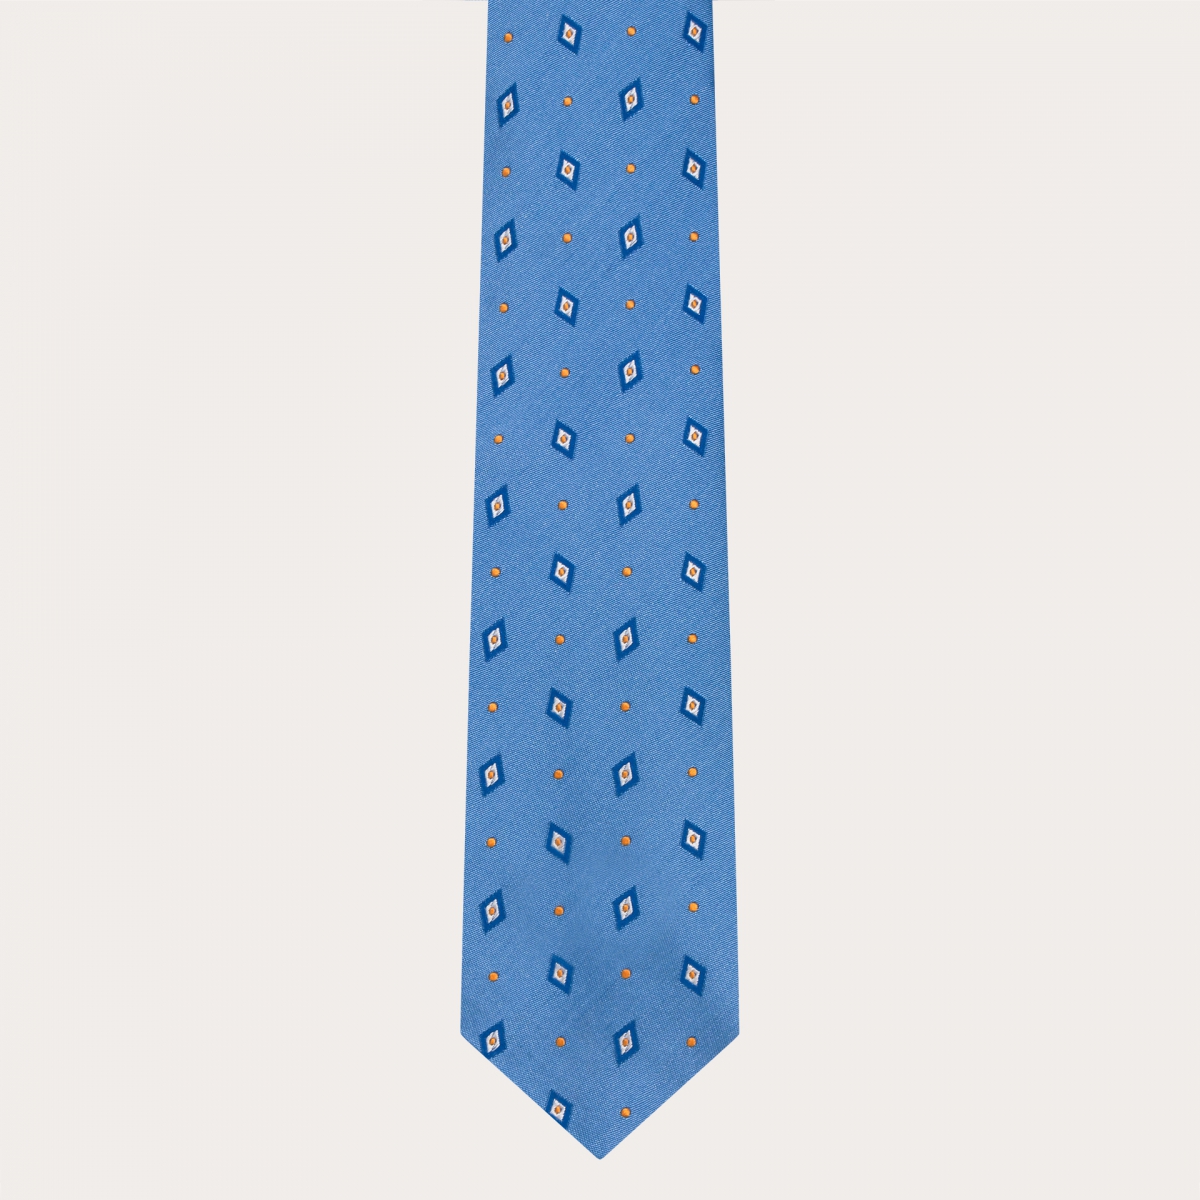 Cravate en soie jacquard pour costume, bleu clair avec losanges et pois bleus et jaunes